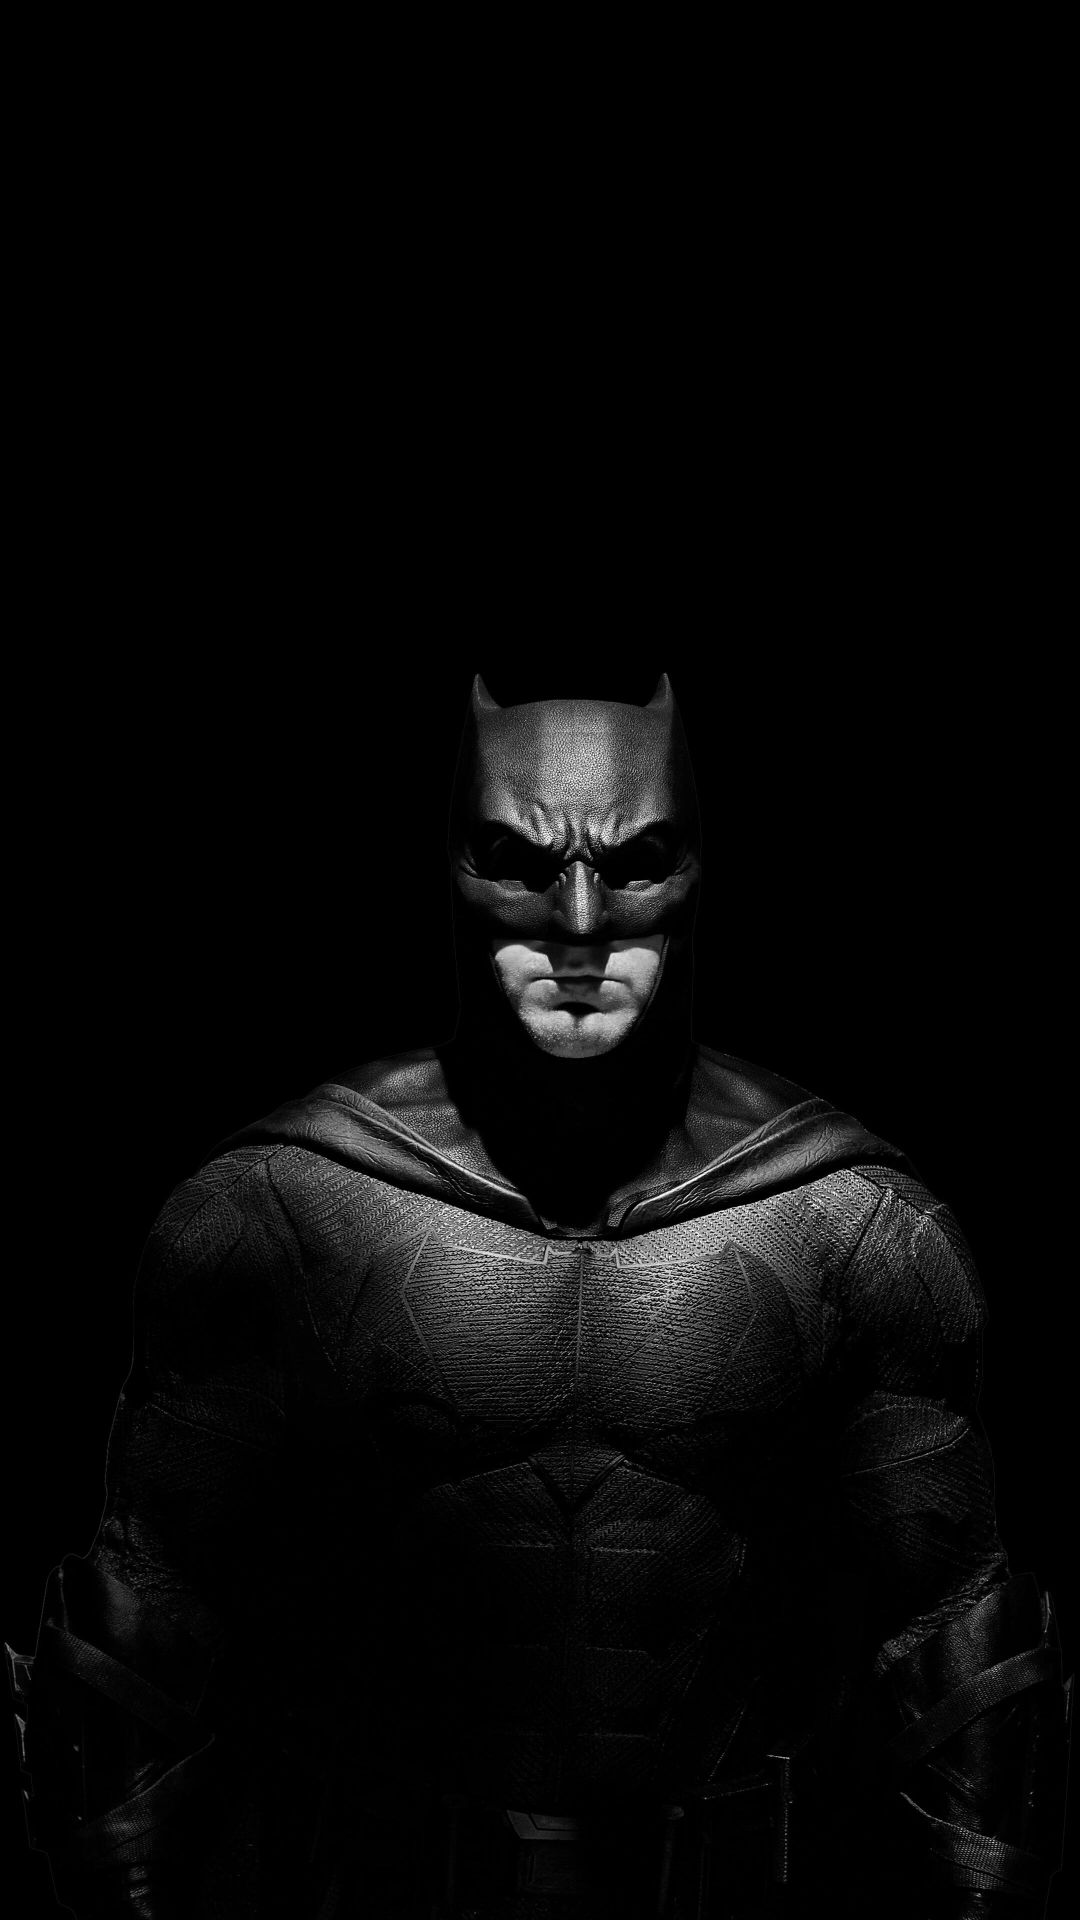 Batman Wallpapers - Top 30 Best Batman Wallpapers Download